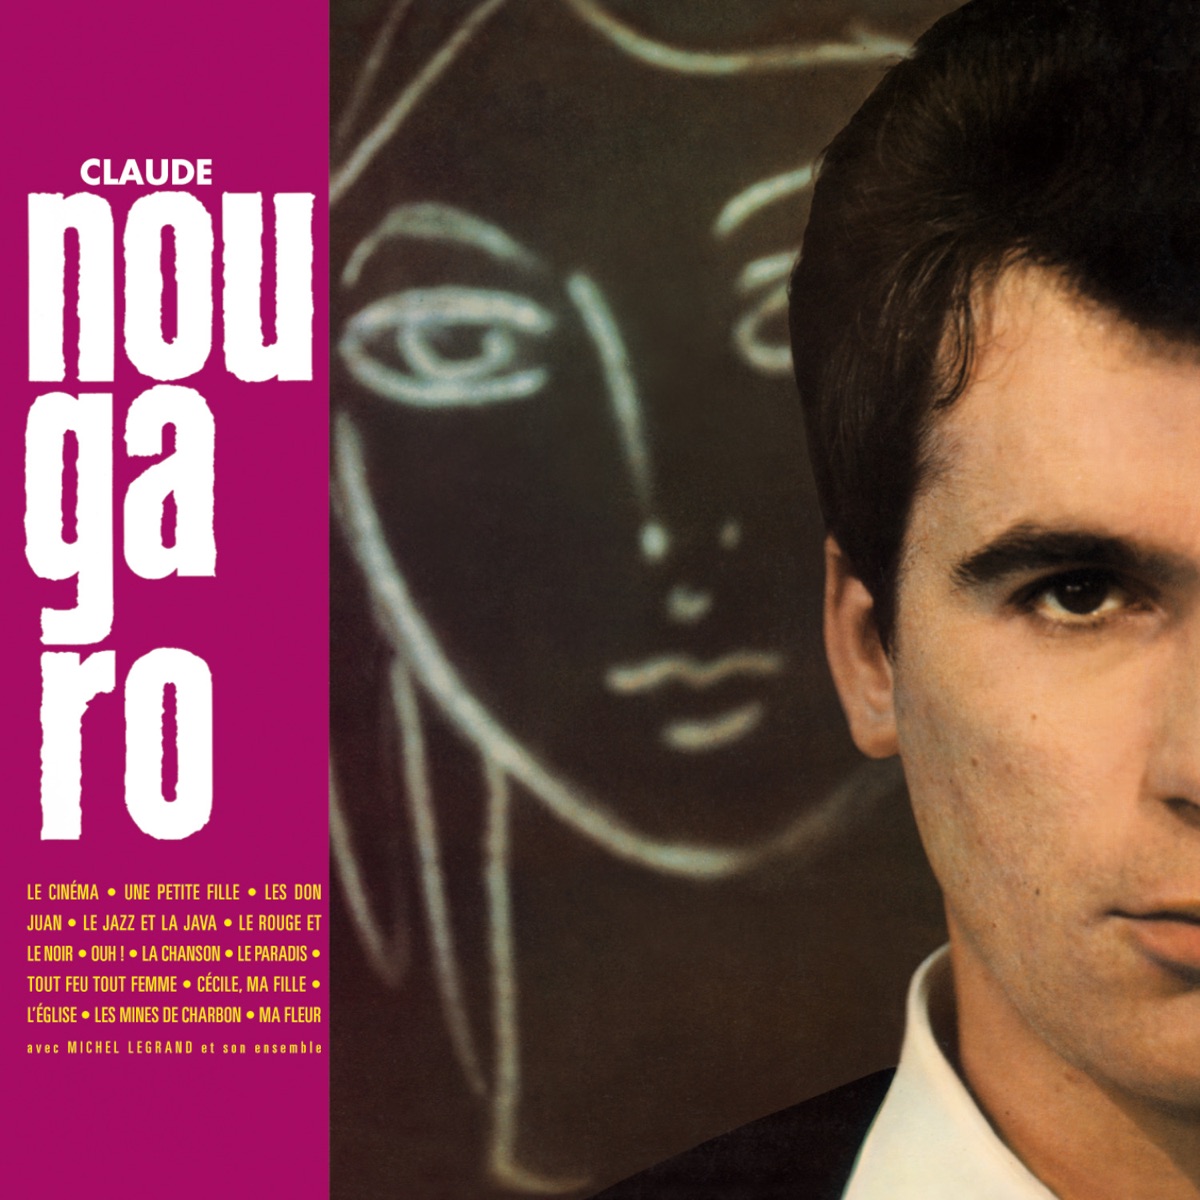 Tu verras – Album par Claude Nougaro – Apple Music